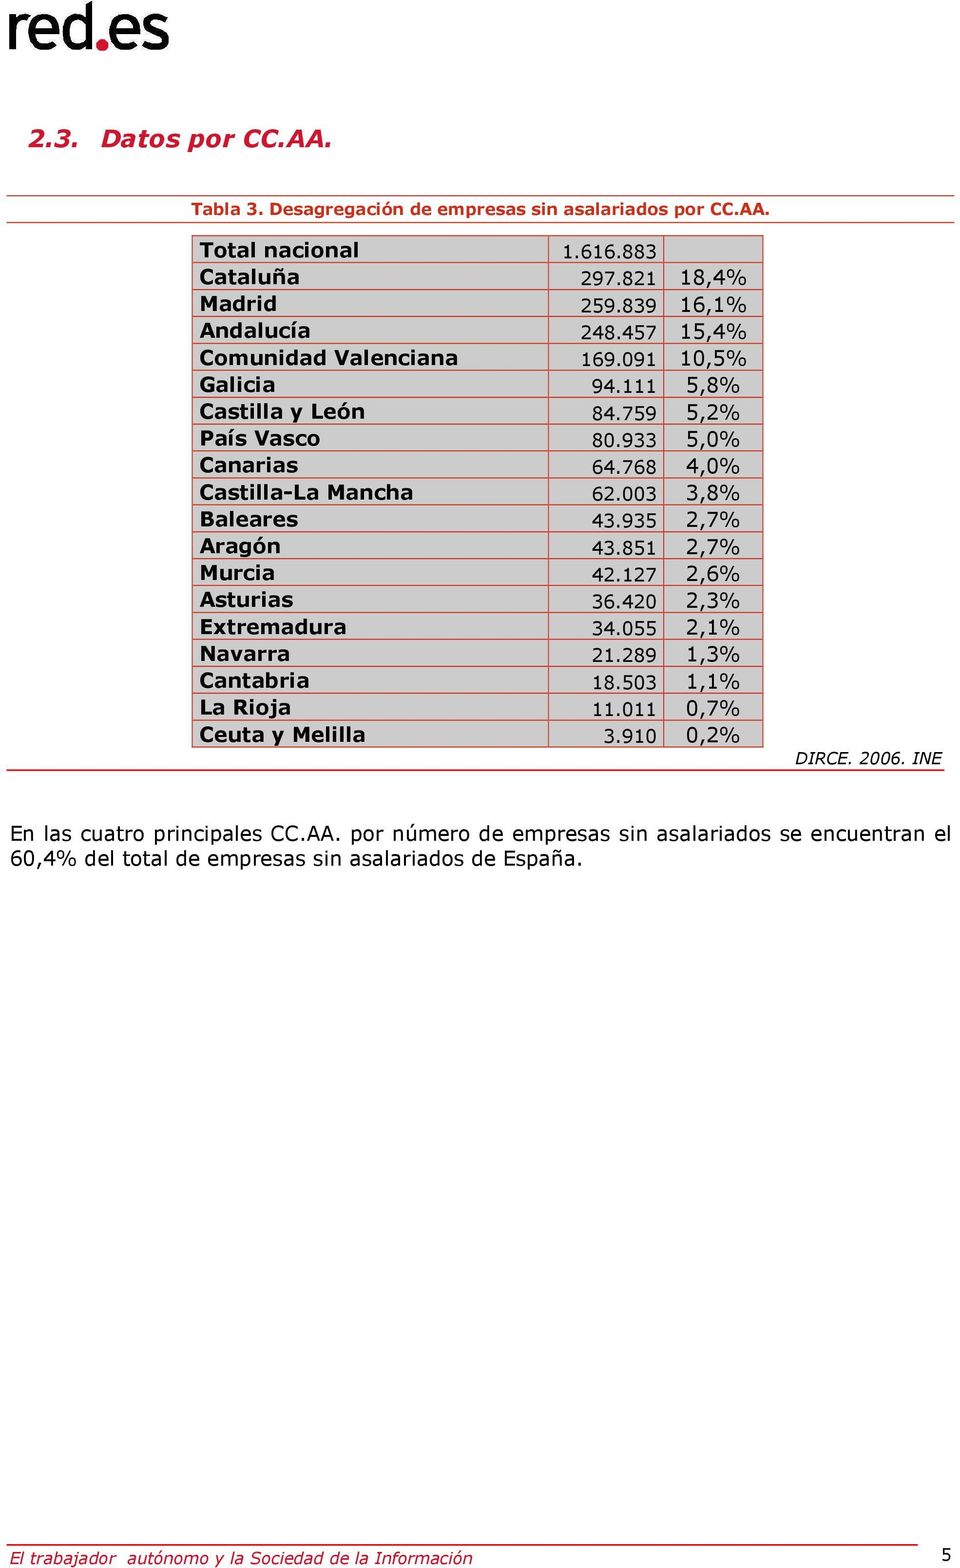 935 2,7% Aragón 43.851 2,7% Murcia 42.127 2,6% Asturias 36.420 2,3% Extremadura 34.055 2,1% Navarra 21.289 1,3% Cantabria 18.503 1,1% La Rioja 11.011 0,7% Ceuta y Melilla 3.